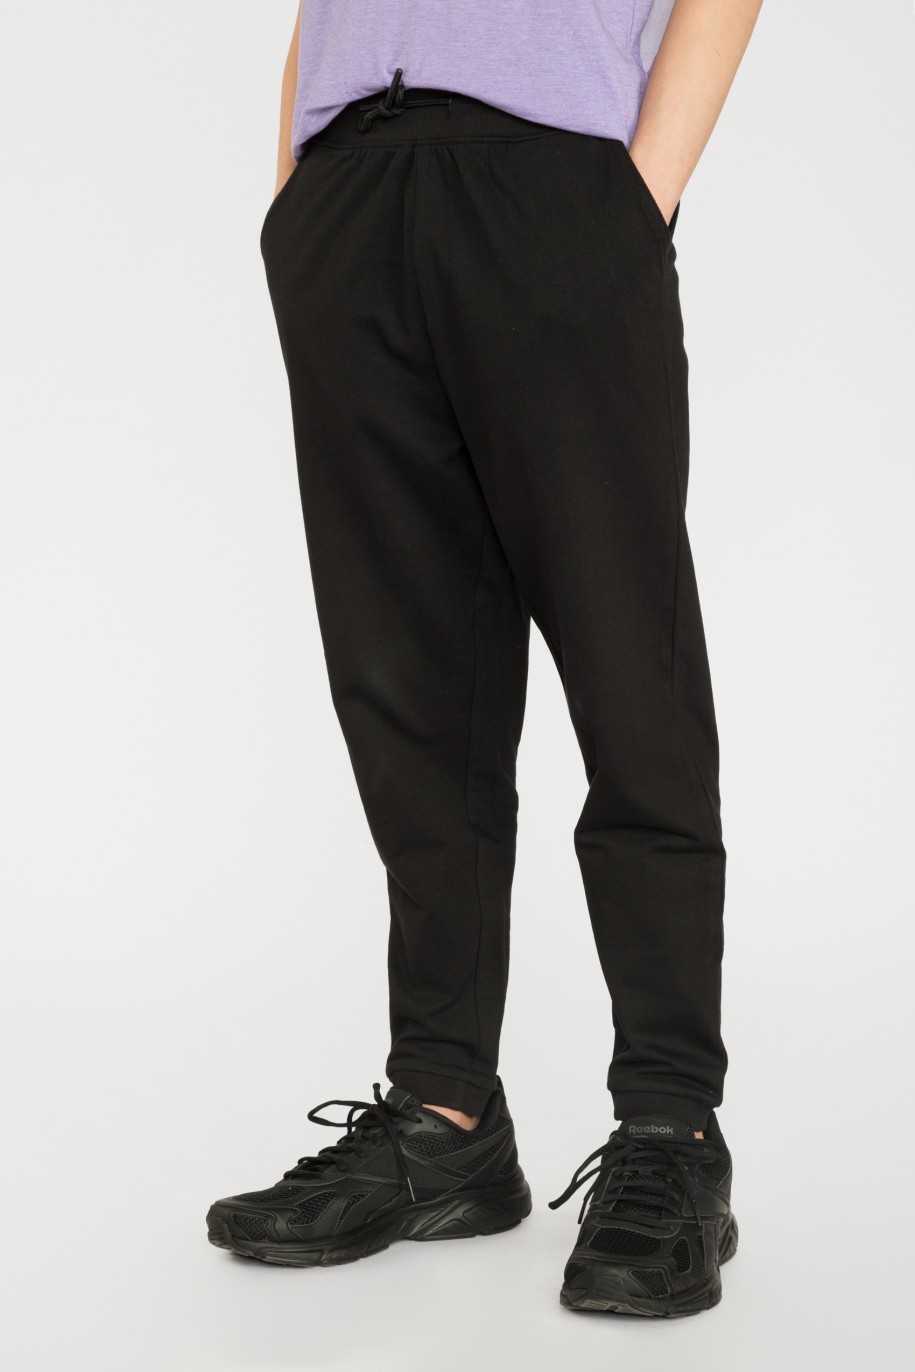 Czarne spodnie dresowe GOOD THINGS TO TRY - 36363